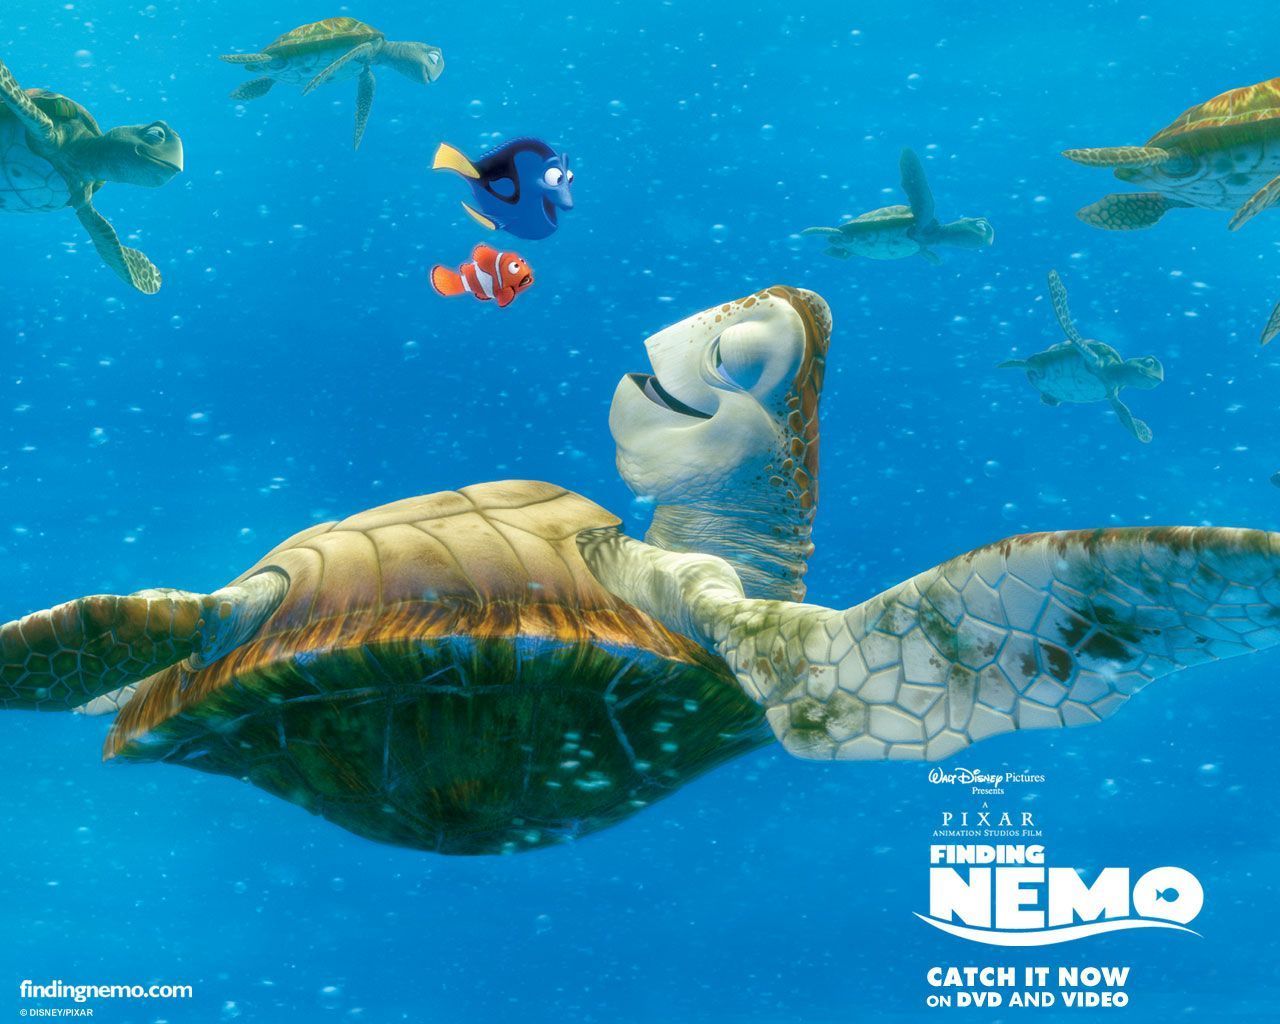 Finding Nemo Wallpaper Number 2 (1280 x 1024 Pixels)